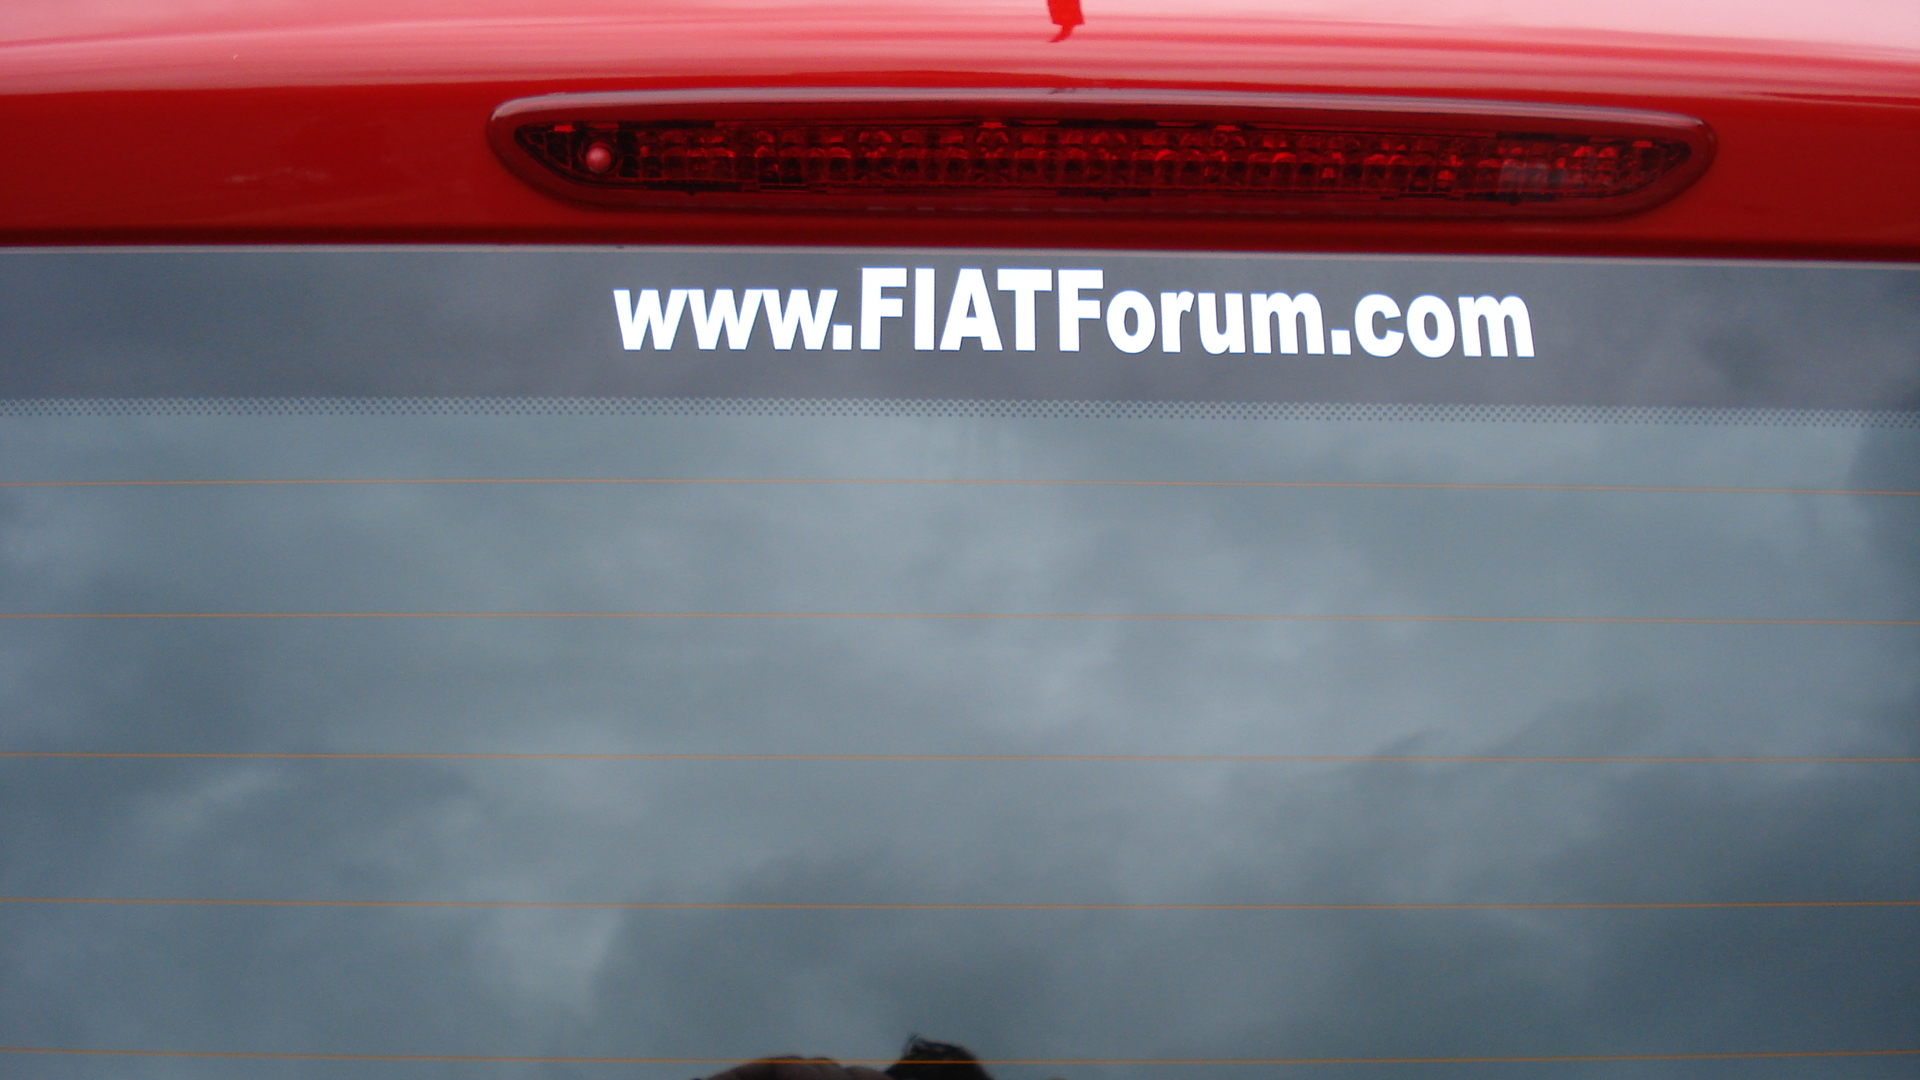 Fiat_Forum1.JPG